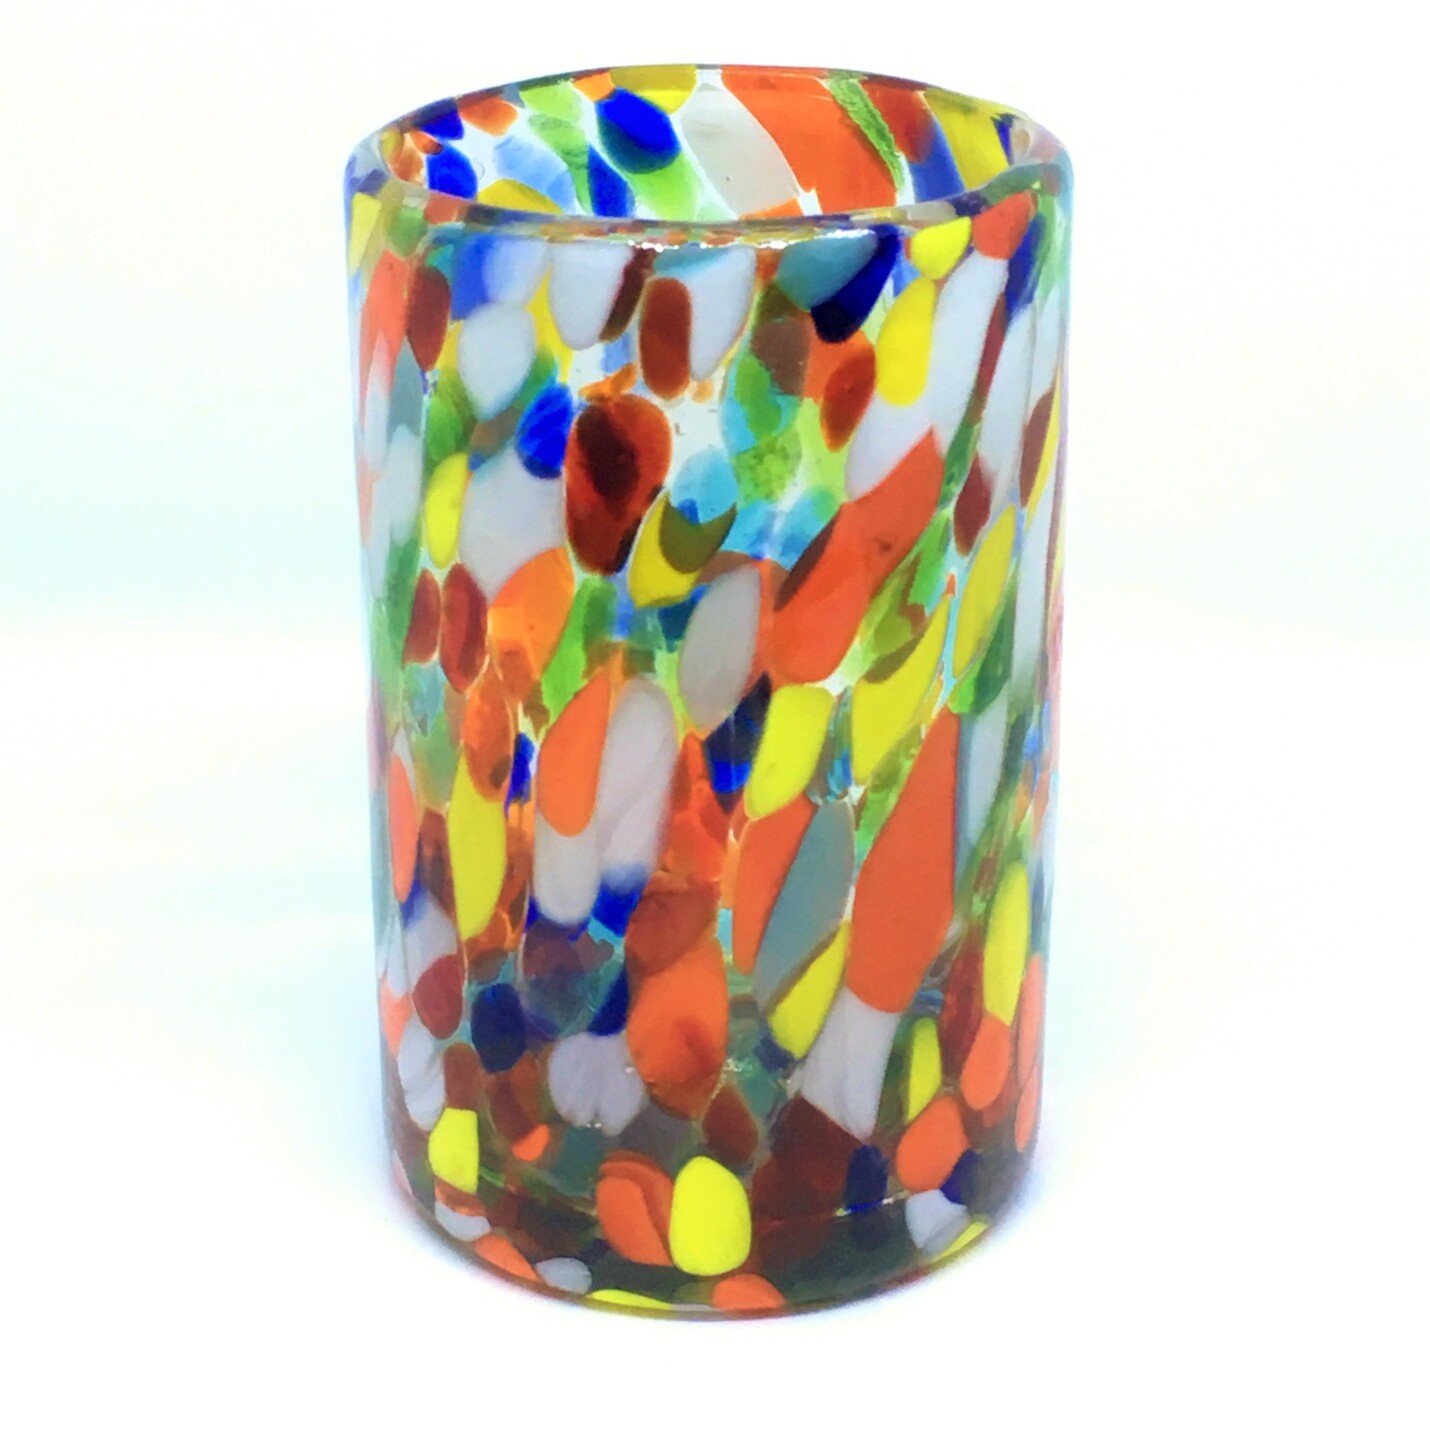 Novedades / Juego de 6 vasos grandes 'Confeti Carnaval' / Deje entrar a la primavera en su casa con éste colorido juego de vasos. El decorado con vidrio multicolor los hace resaltar en cualquier lugar.